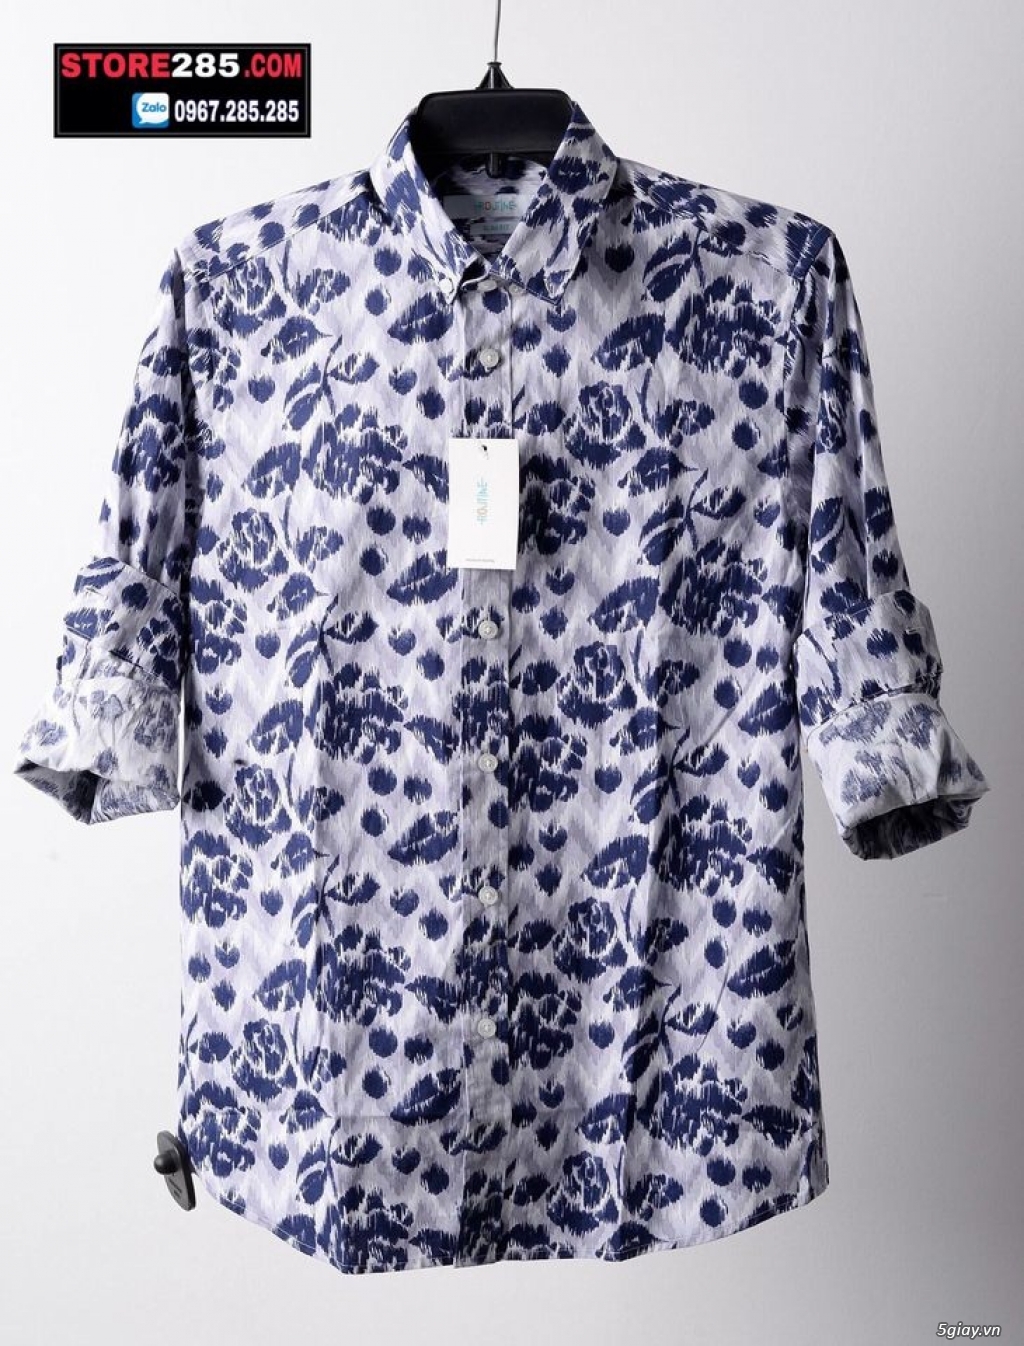 STORE285 - Thời trang VNXK: Áo thun, áo sơ mi,... đơn giản phù hợp mọi đối tượng giá chỉ 150k - 280k - 42